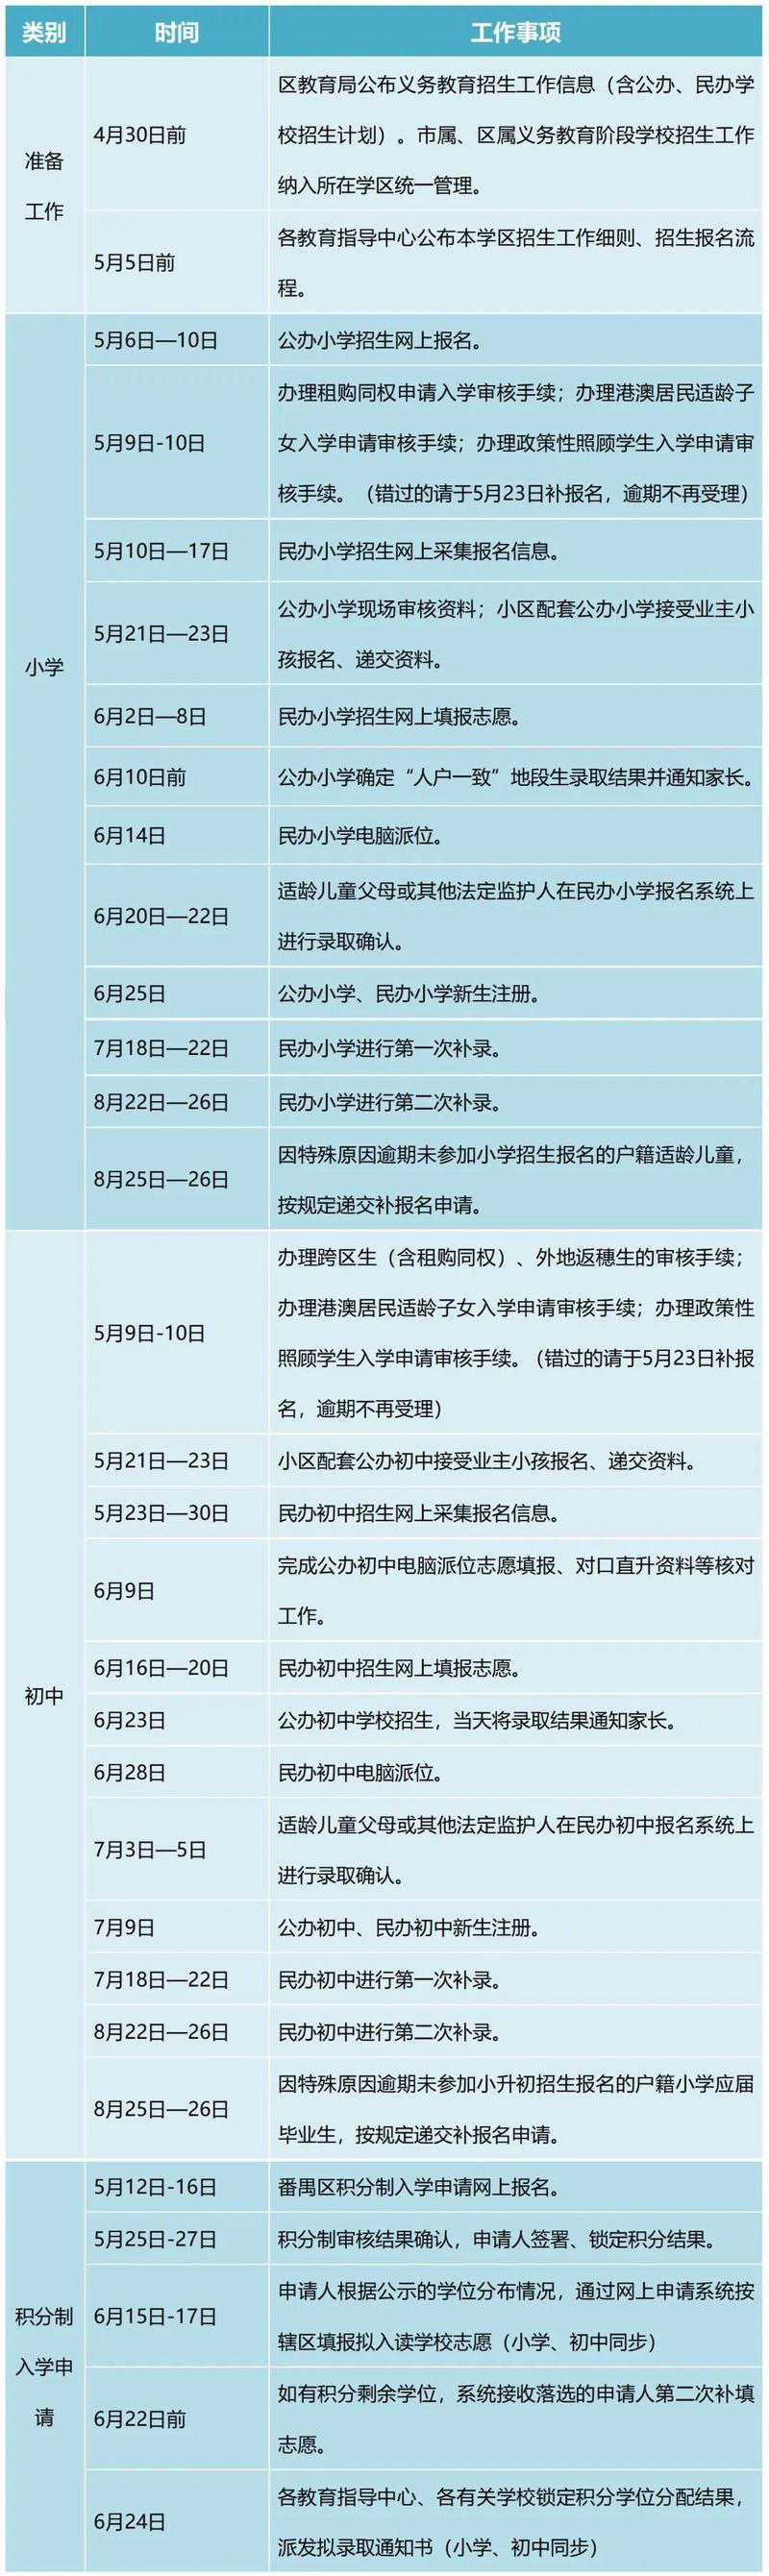 广州桑拿网评述:2022年番禺区义务教育学校招生工作指引发布